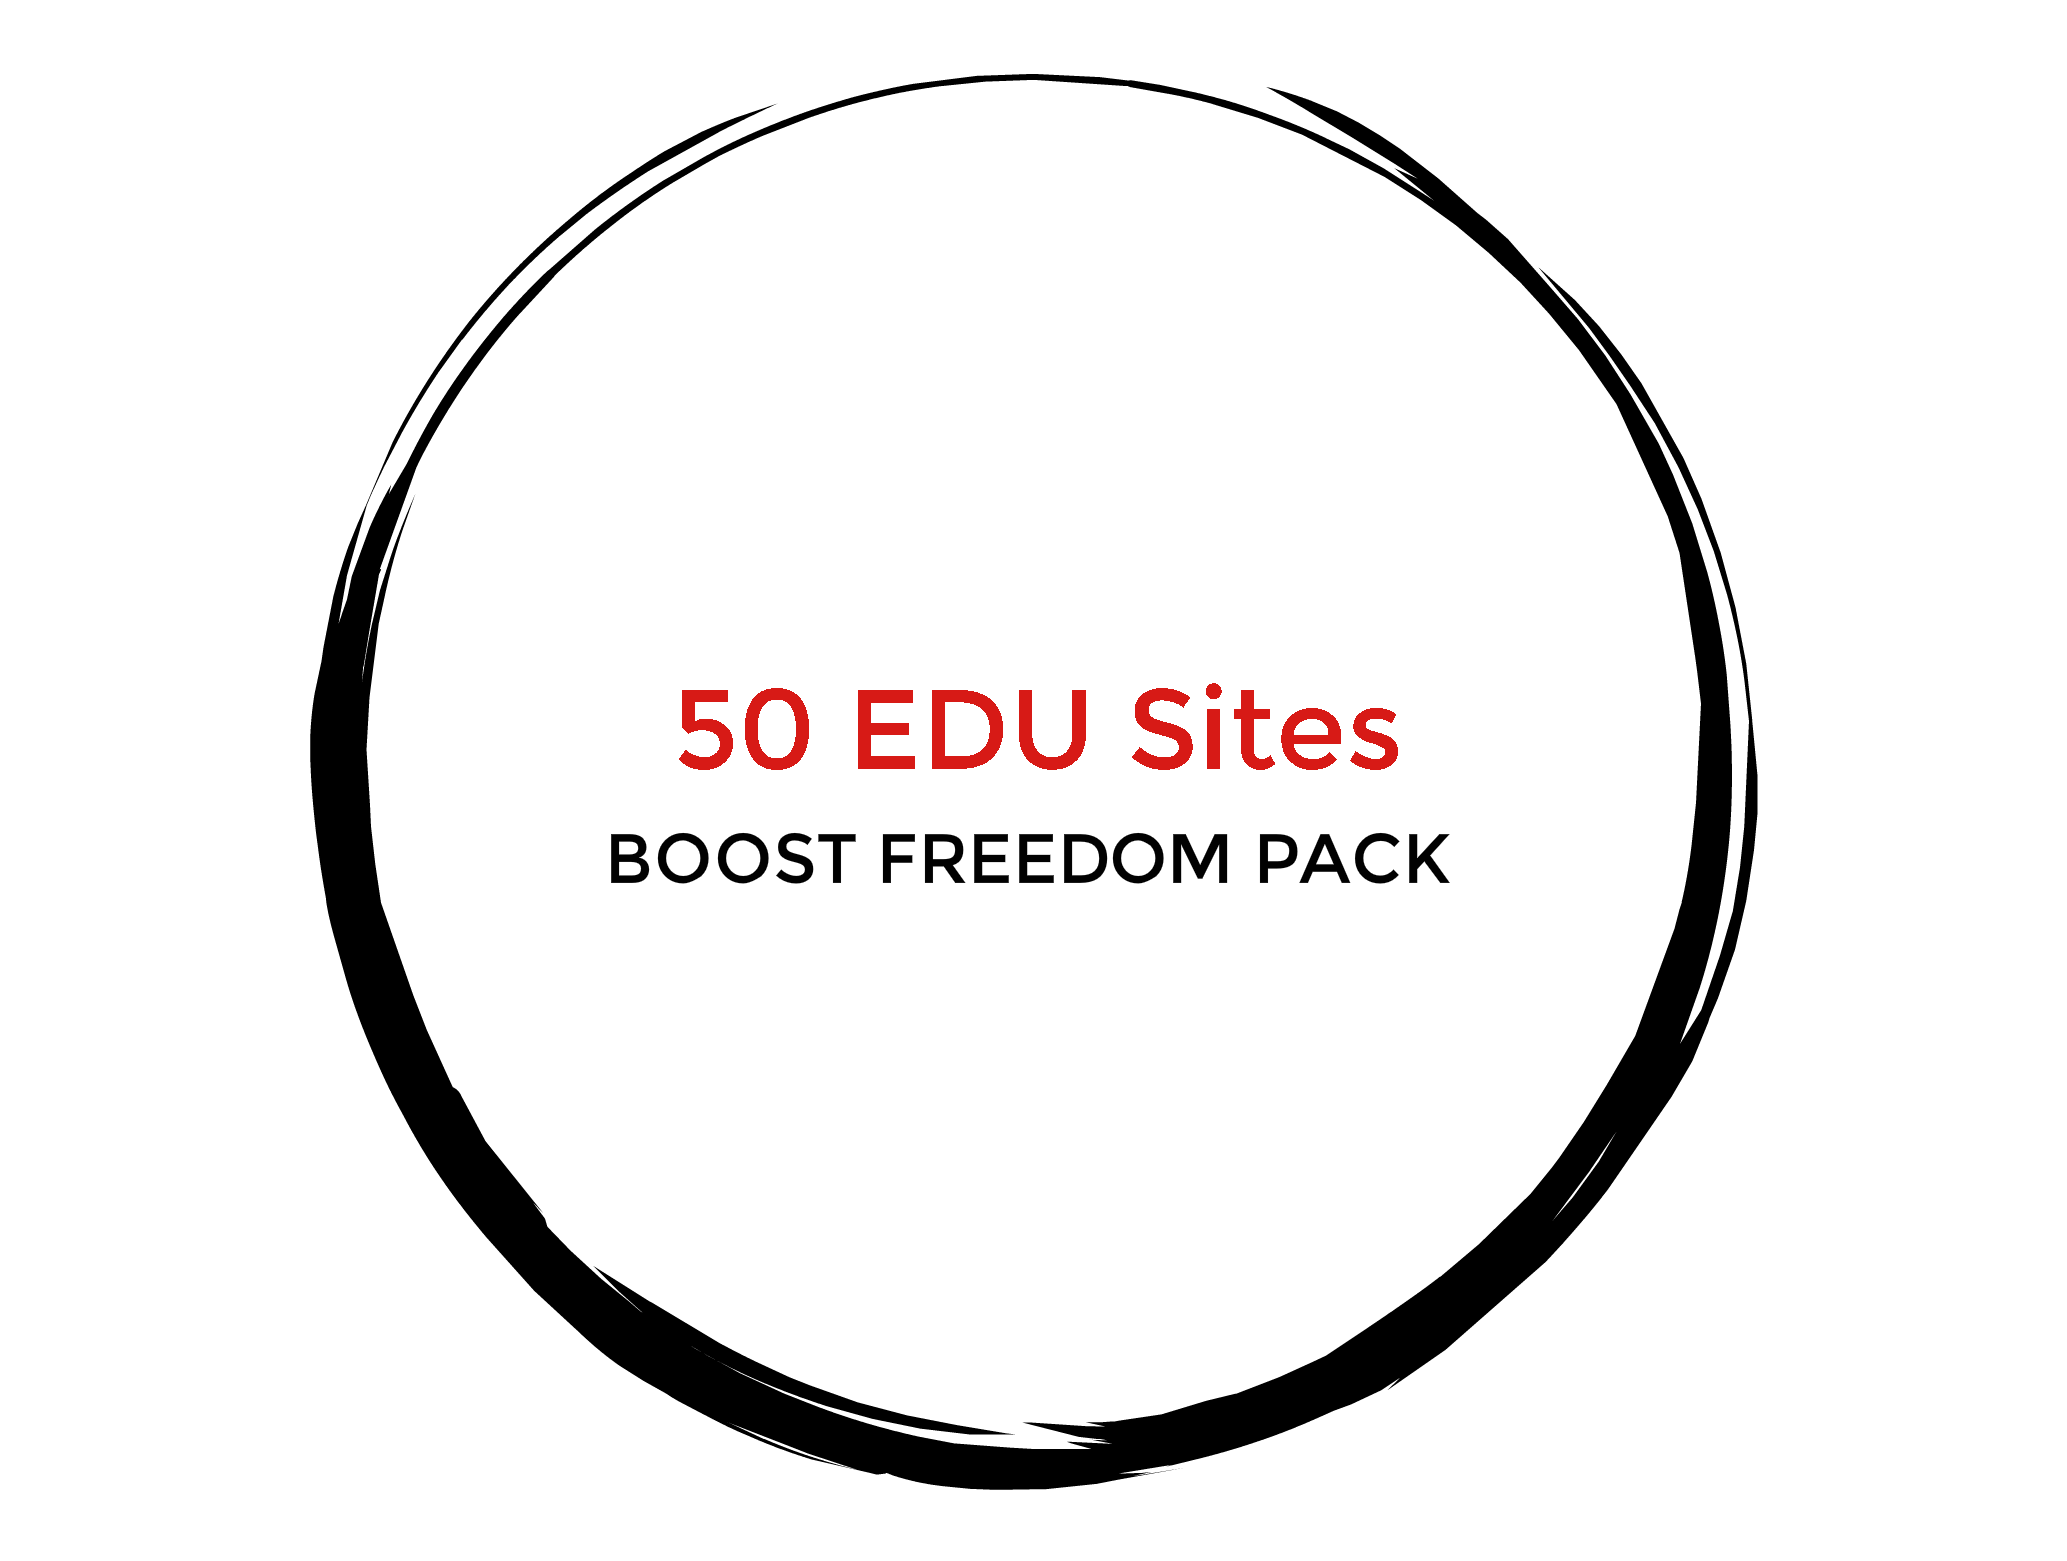 50 EDU Sites - Boost Freedom Pack